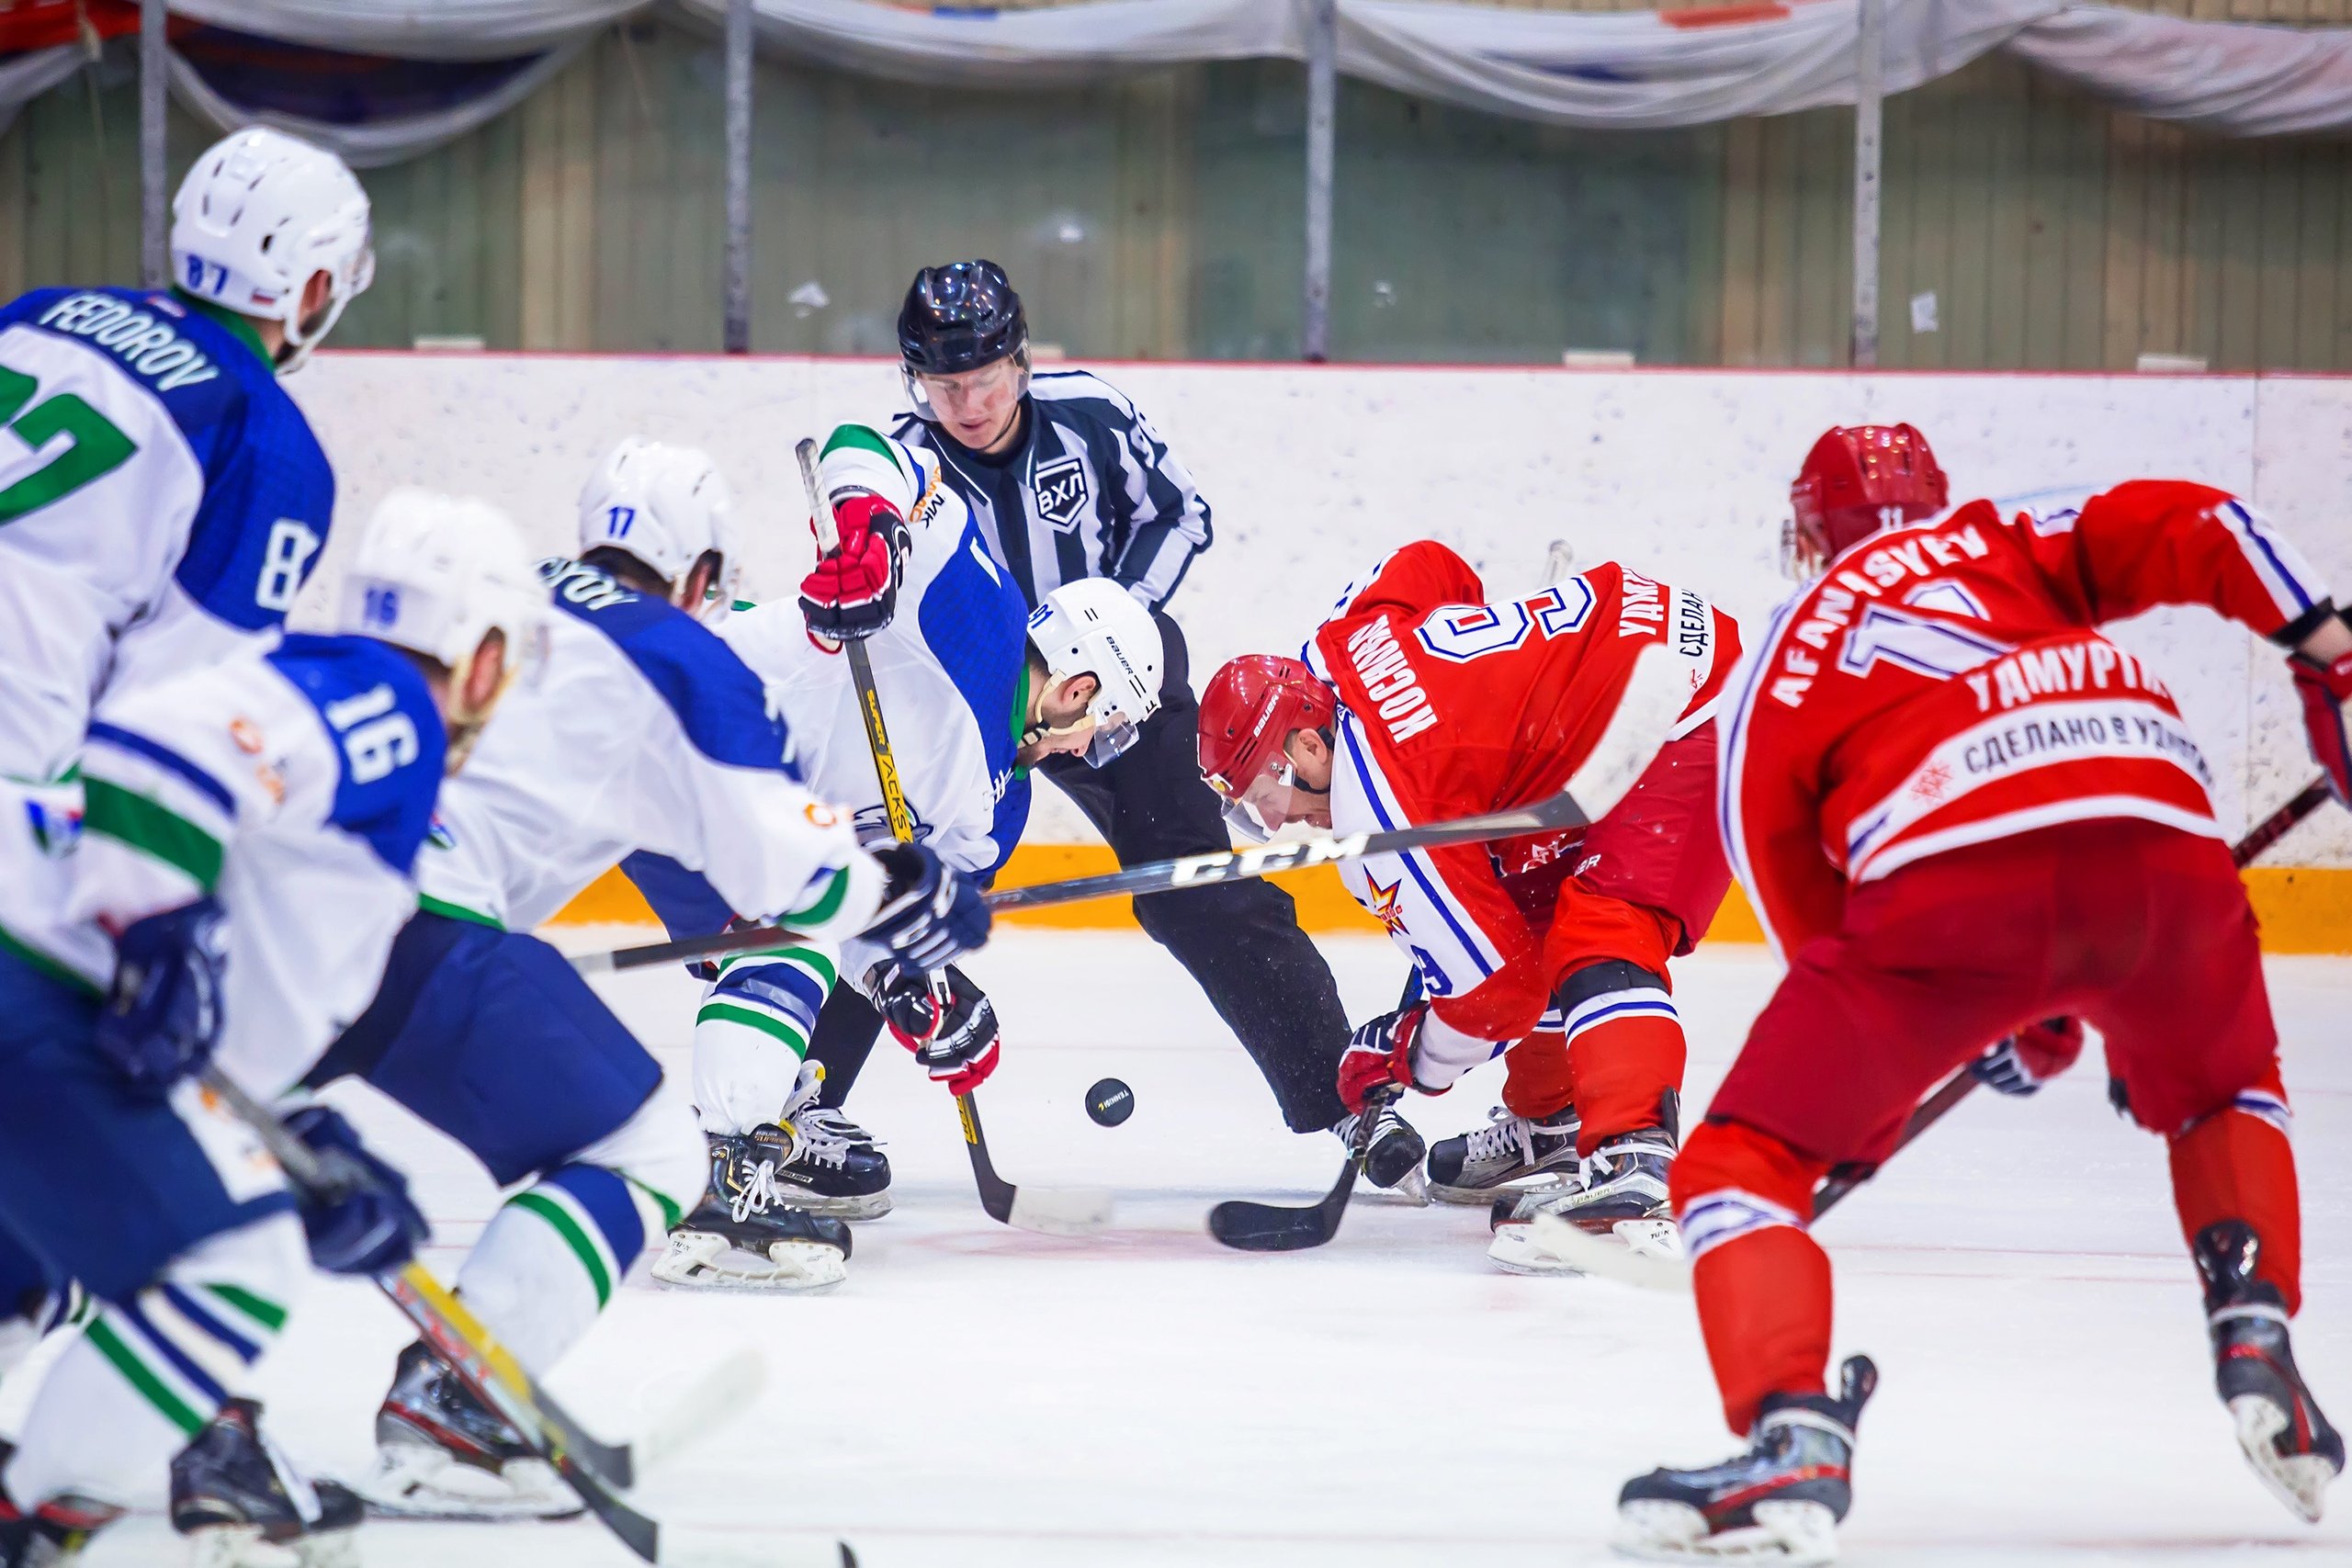 

Хоккеисты «Ижстали» уступили на своём льду «Горняку» из Башкирии

